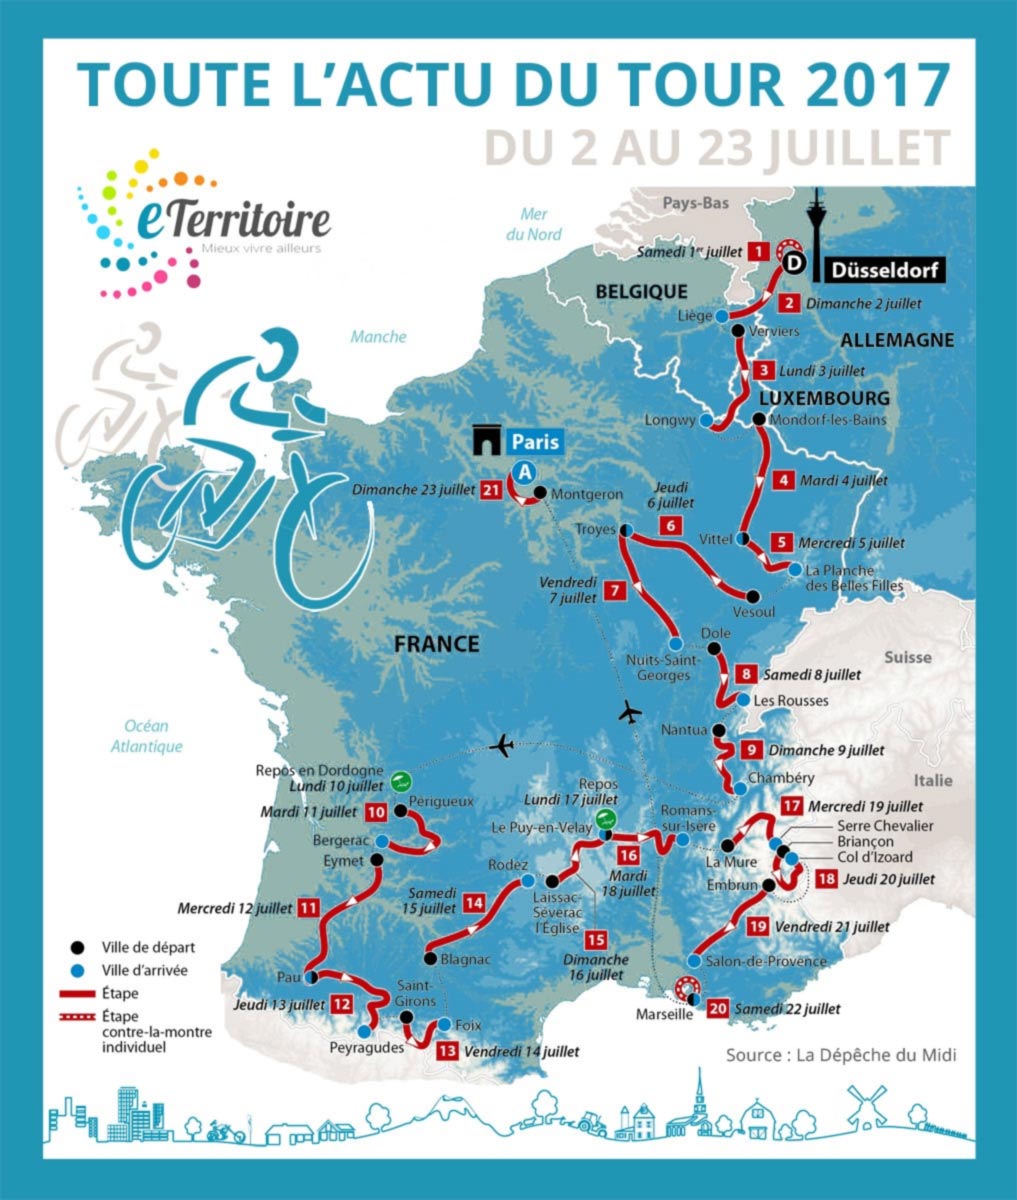 Tour de France 2017 - Thuillières - Passage d'étape